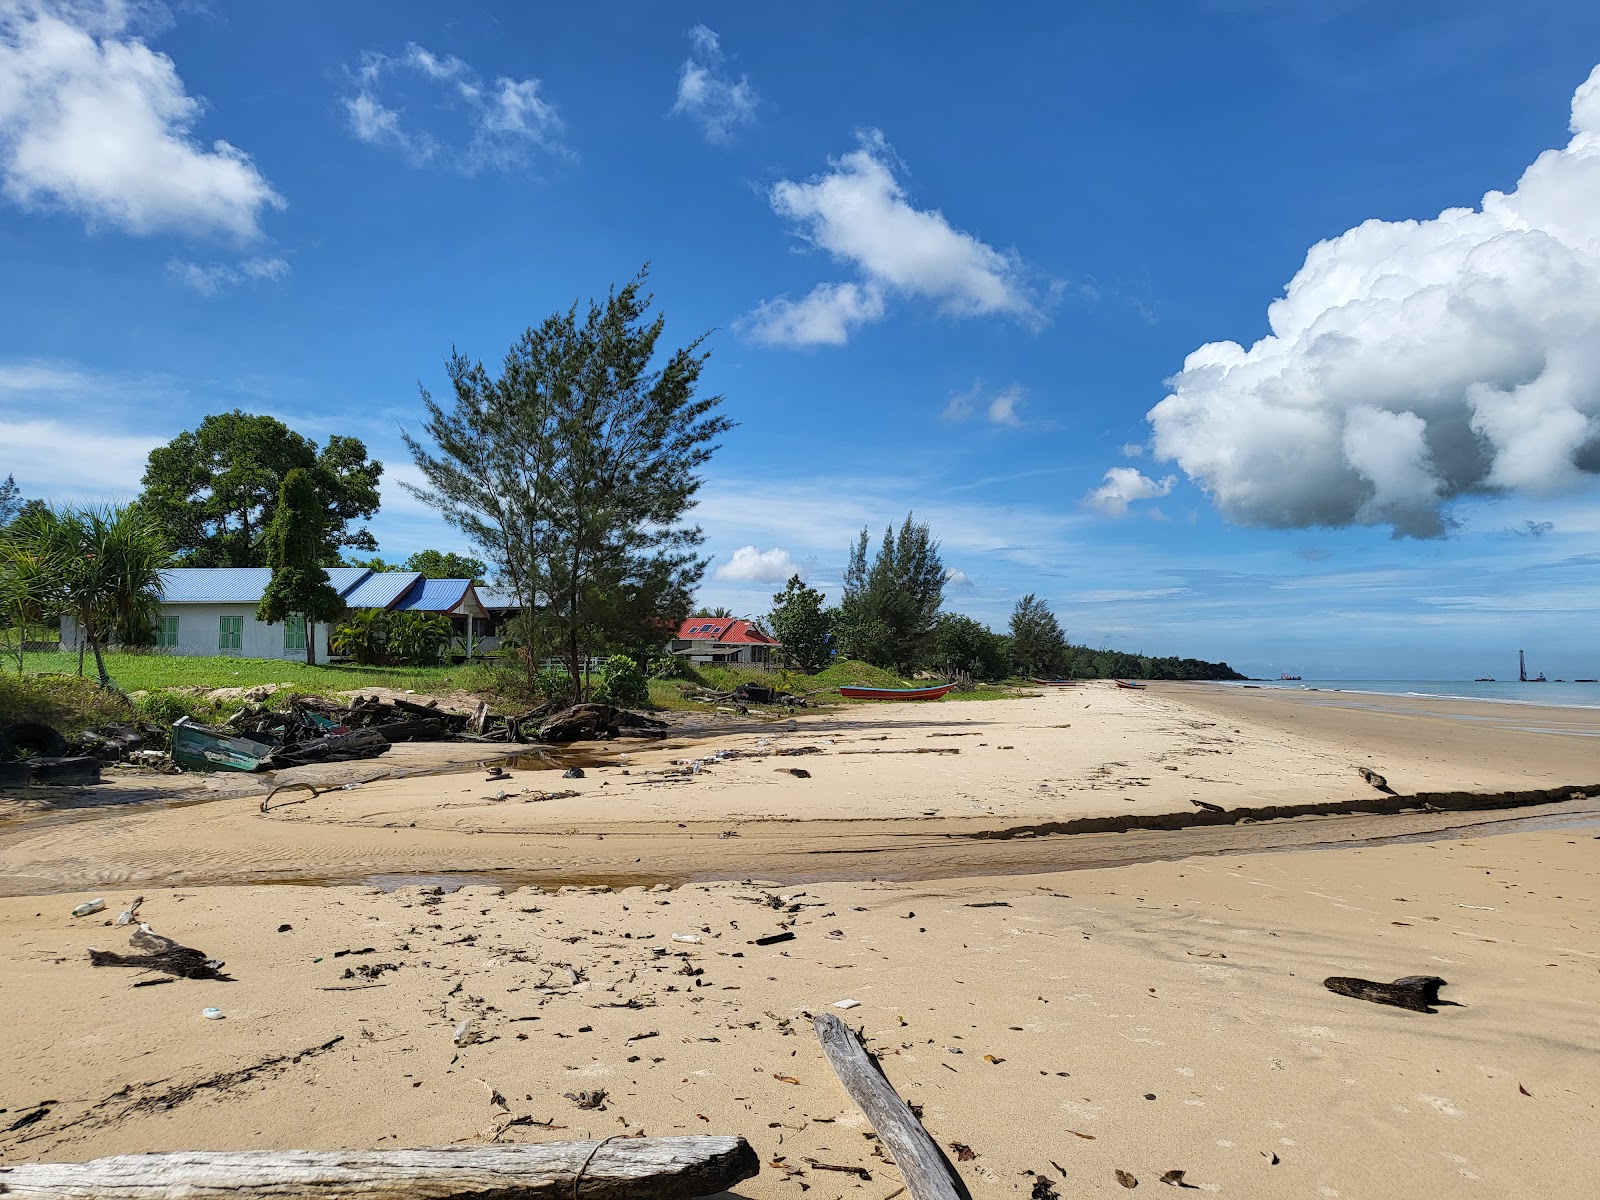 Zdjęcie Batu Mandi Beach z poziomem czystości głoska bezdźwięczna